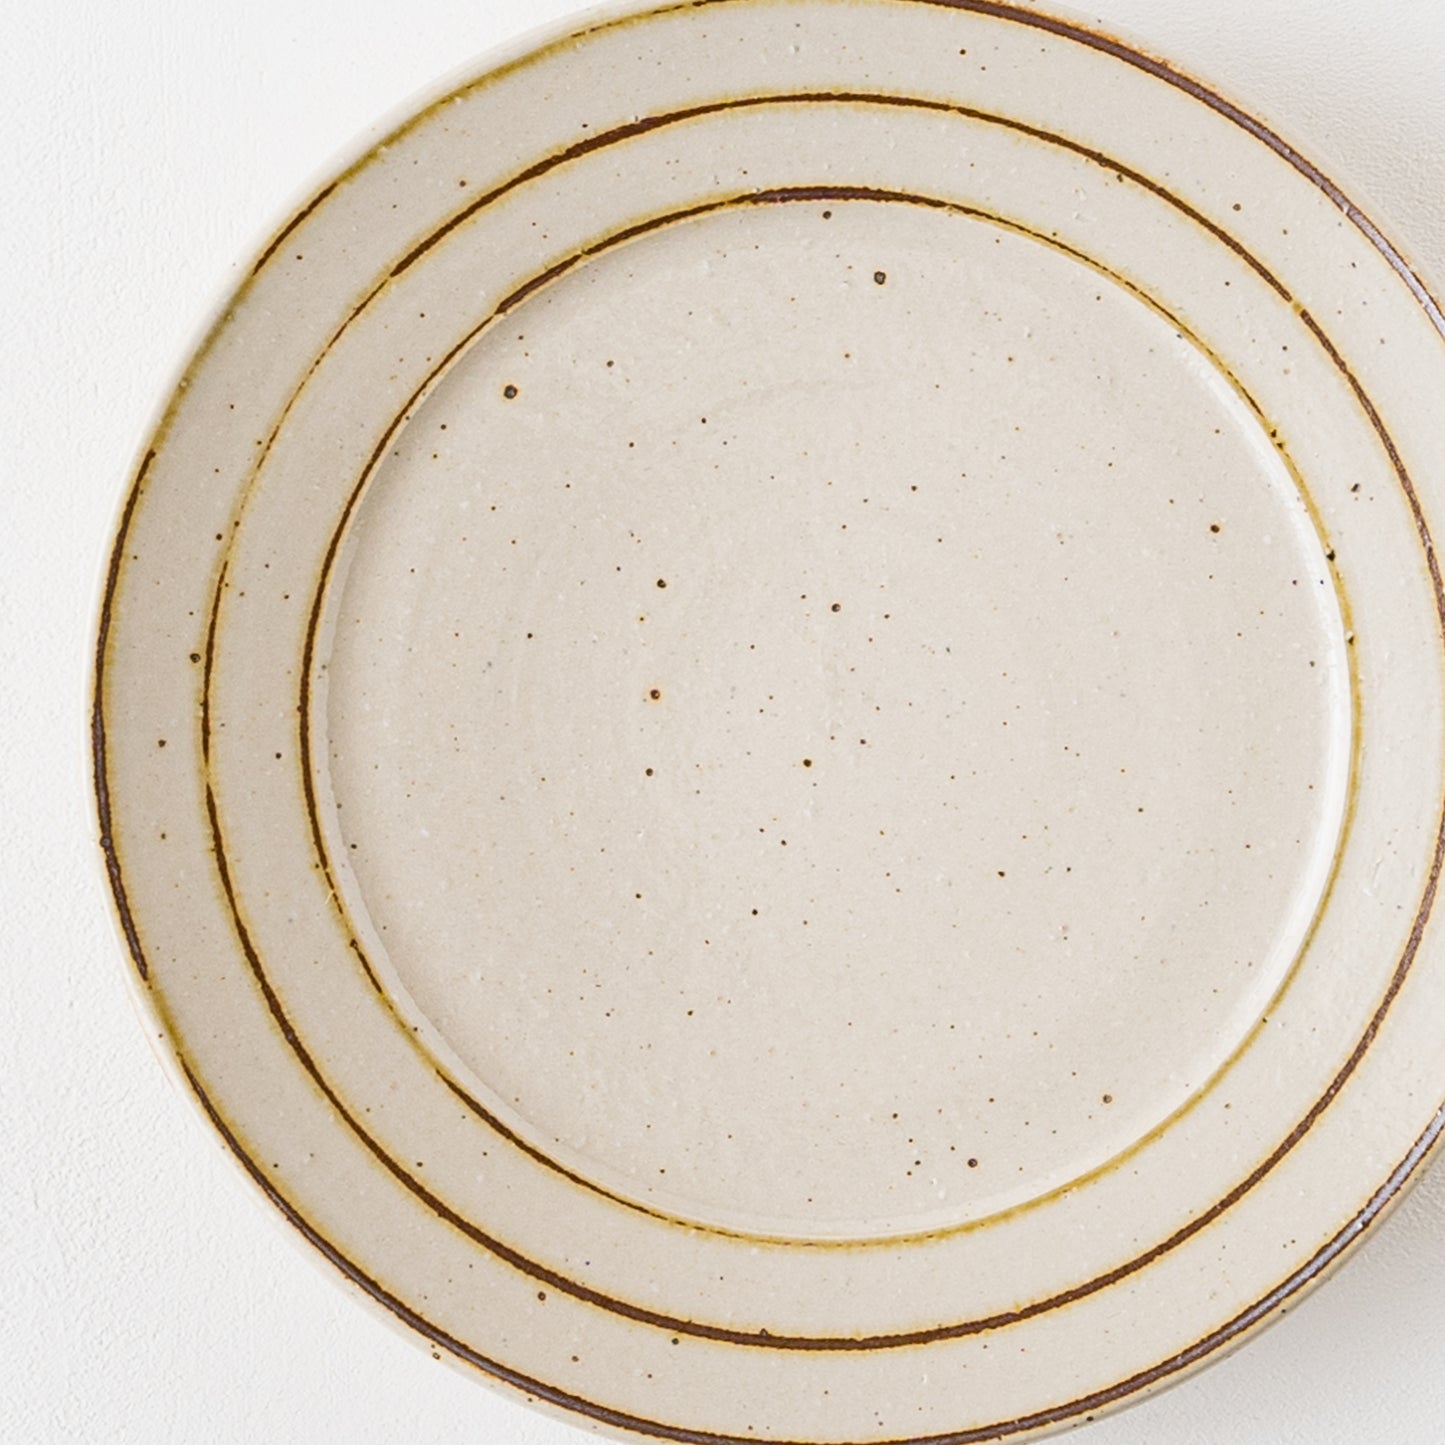 長年愛用しているような風合いが素敵な冨本大輔さんの灰釉鉄絵7寸リム皿